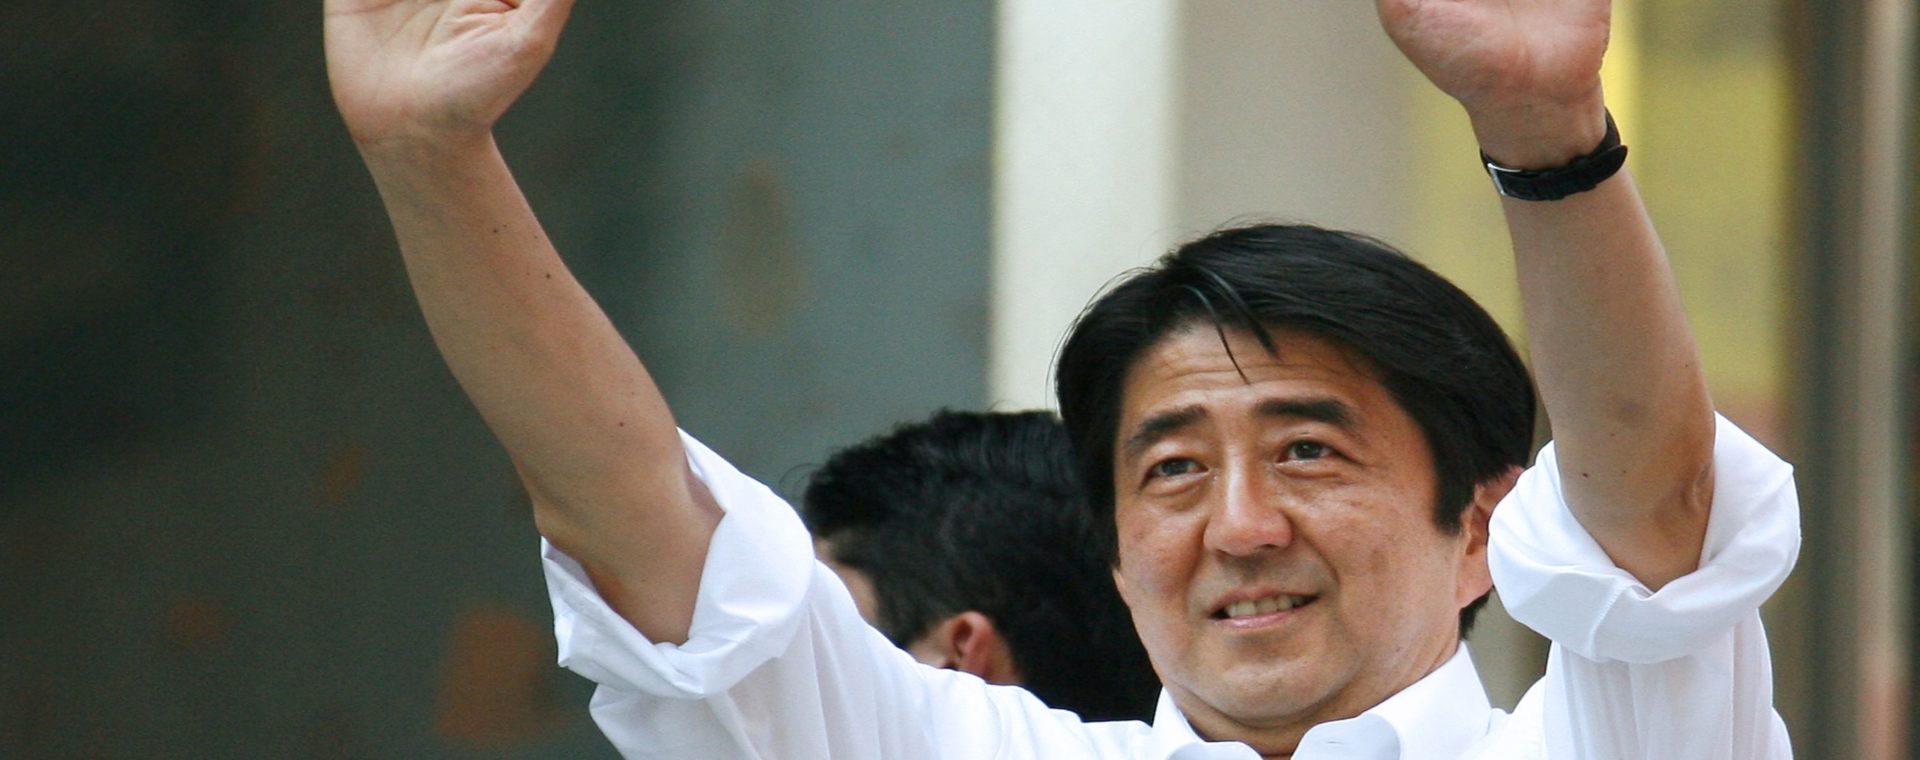 Shinzo Abe meninggal dunia usai ditembak saat berkampanye di Jepang.  - Bloomberg. Shinzo Abe dan Kisahnya Merintis Jalan Damai dengan AS, Rusia, China, Korsel